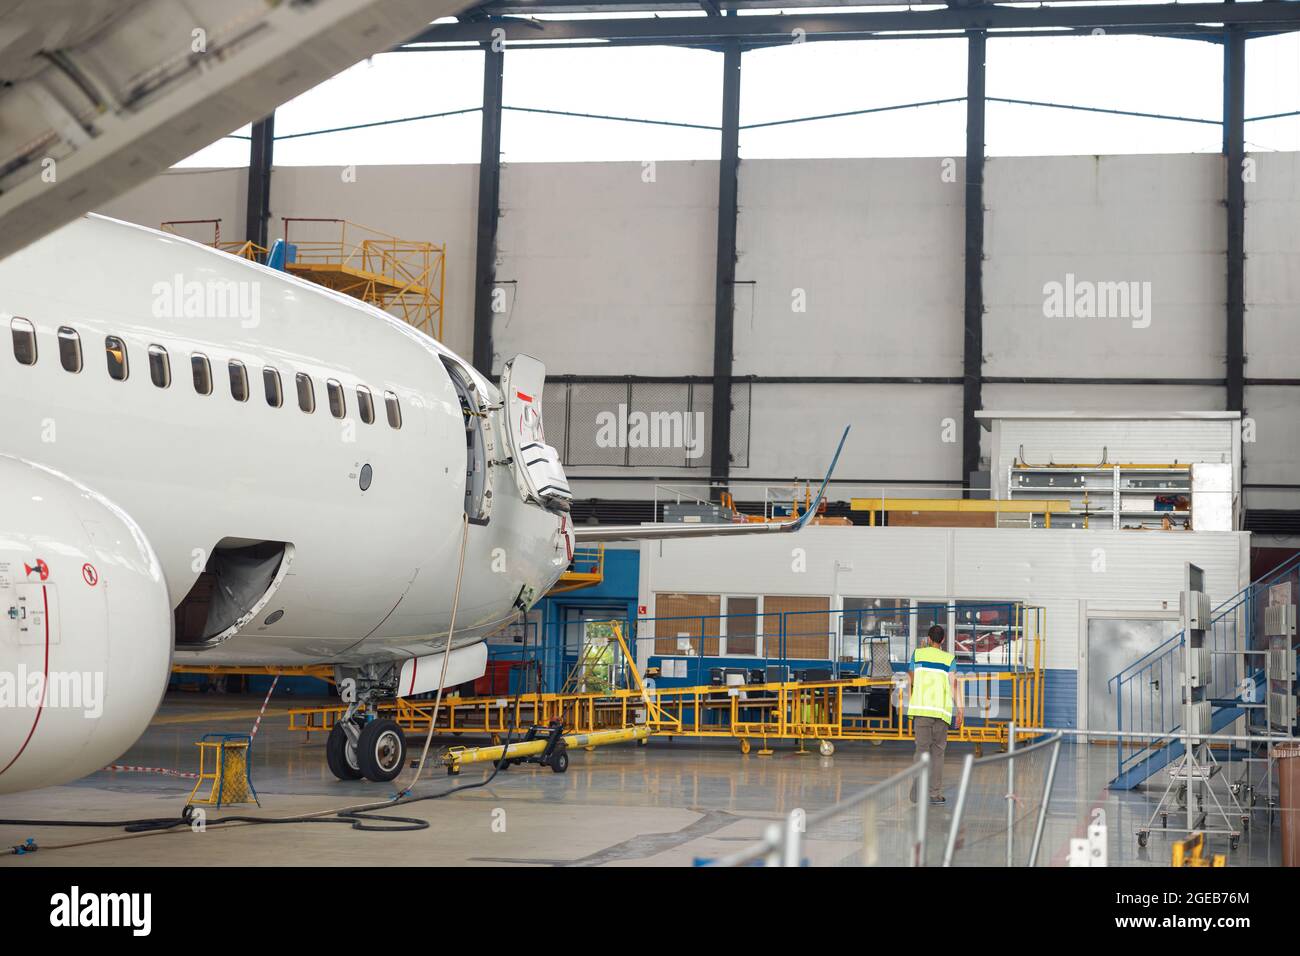 Avion. Avion de passagers en entretien intensif dans le hangar de l'aéroport à l'intérieur dans la journée Banque D'Images